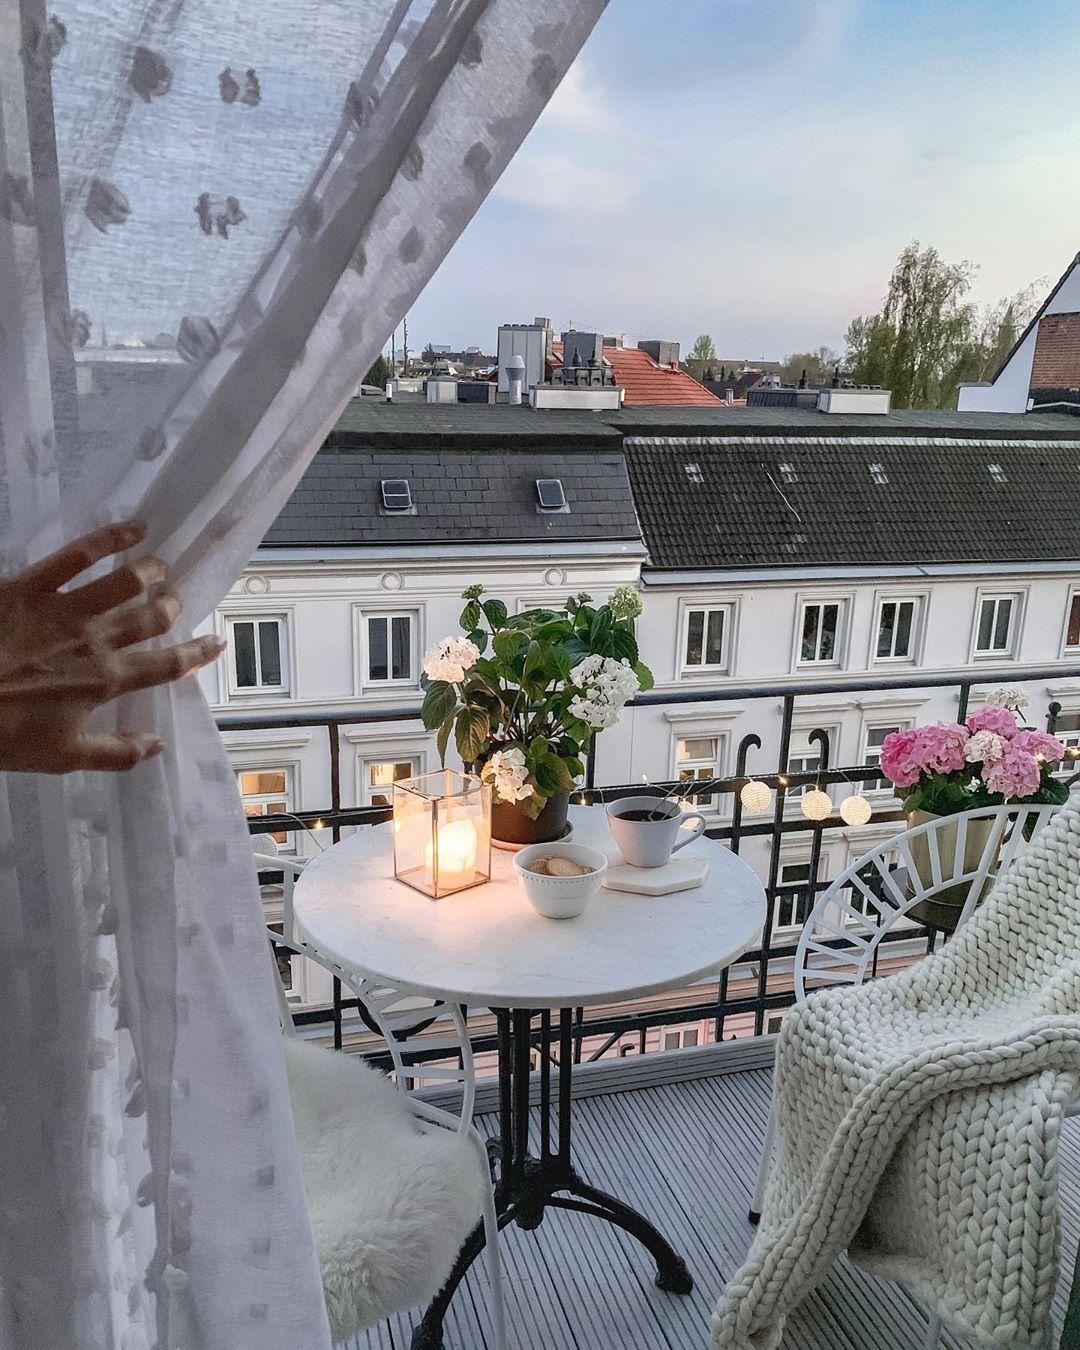 Unser kleiner #Balkon über den Dächern Hamburgs.⭐ #draußensein #balkonien #altbau #blumen #stayathome #zuhausesein #cozy